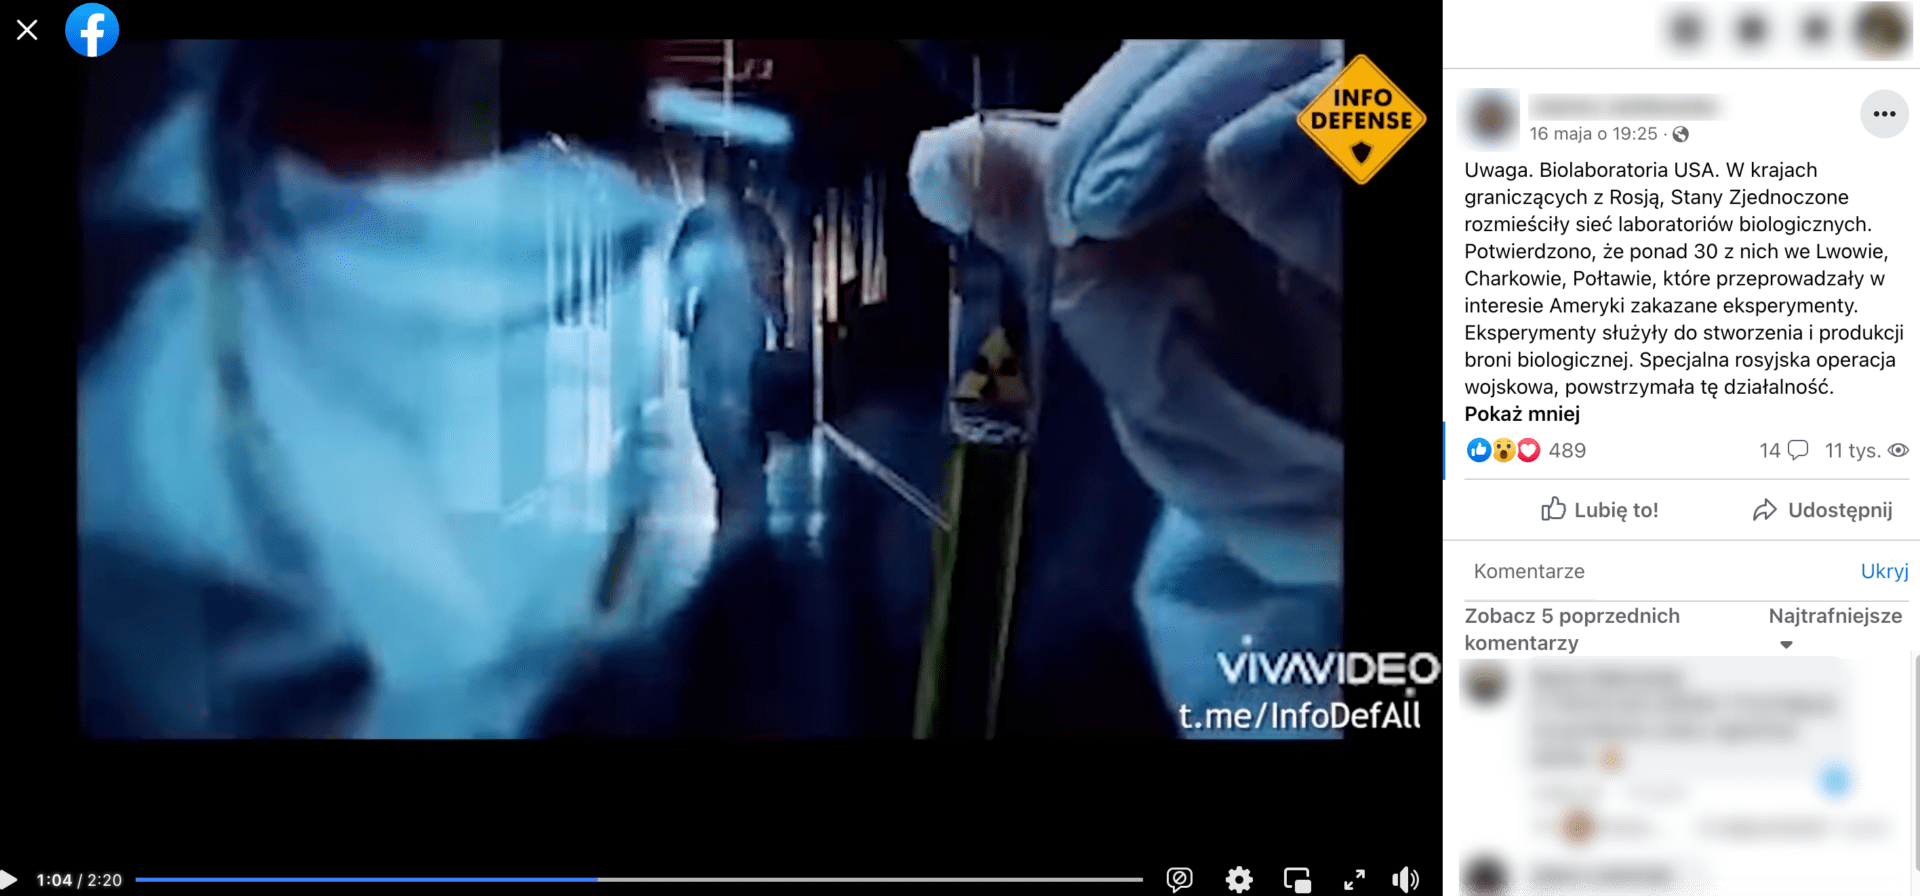 Zrzut ekranu omawianego posta, w którym zamieszczono nagranie dotyczące rzekomych laboratoriów broni biologicznej w Ukrainie. Widoczny jest człowiek w ubraniu ochronnym idący korytarzem i dłonie w rękawiczkach trzymające probówkę.